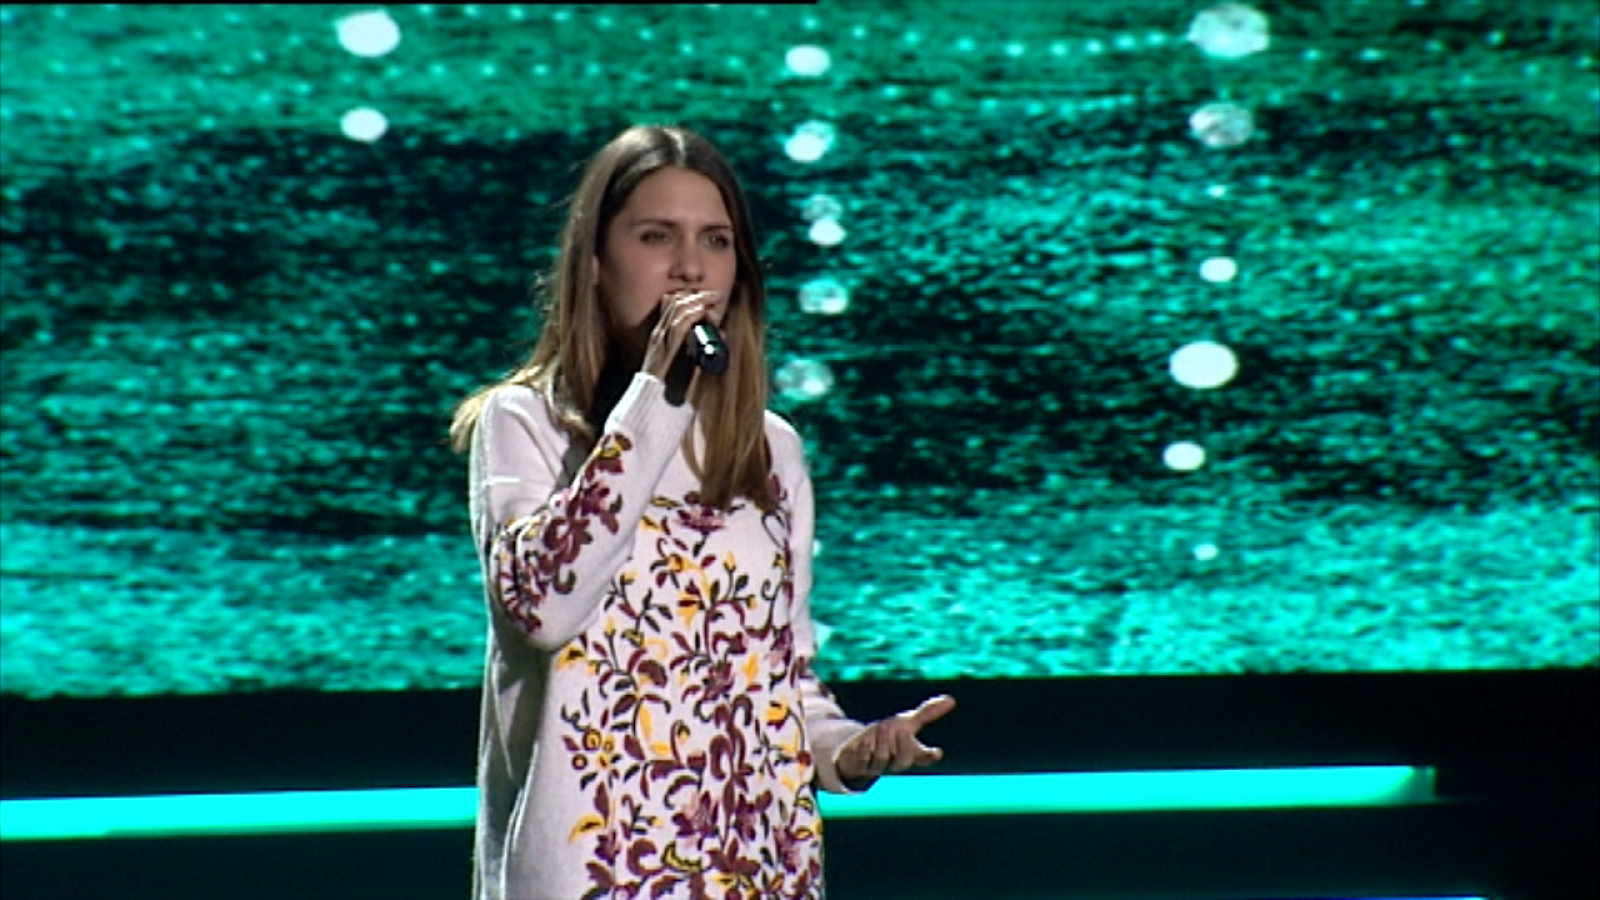 Eurovisión 2019 - Eurotemazo: Ensayo general de Sabela cantando "Hoy soñaré"